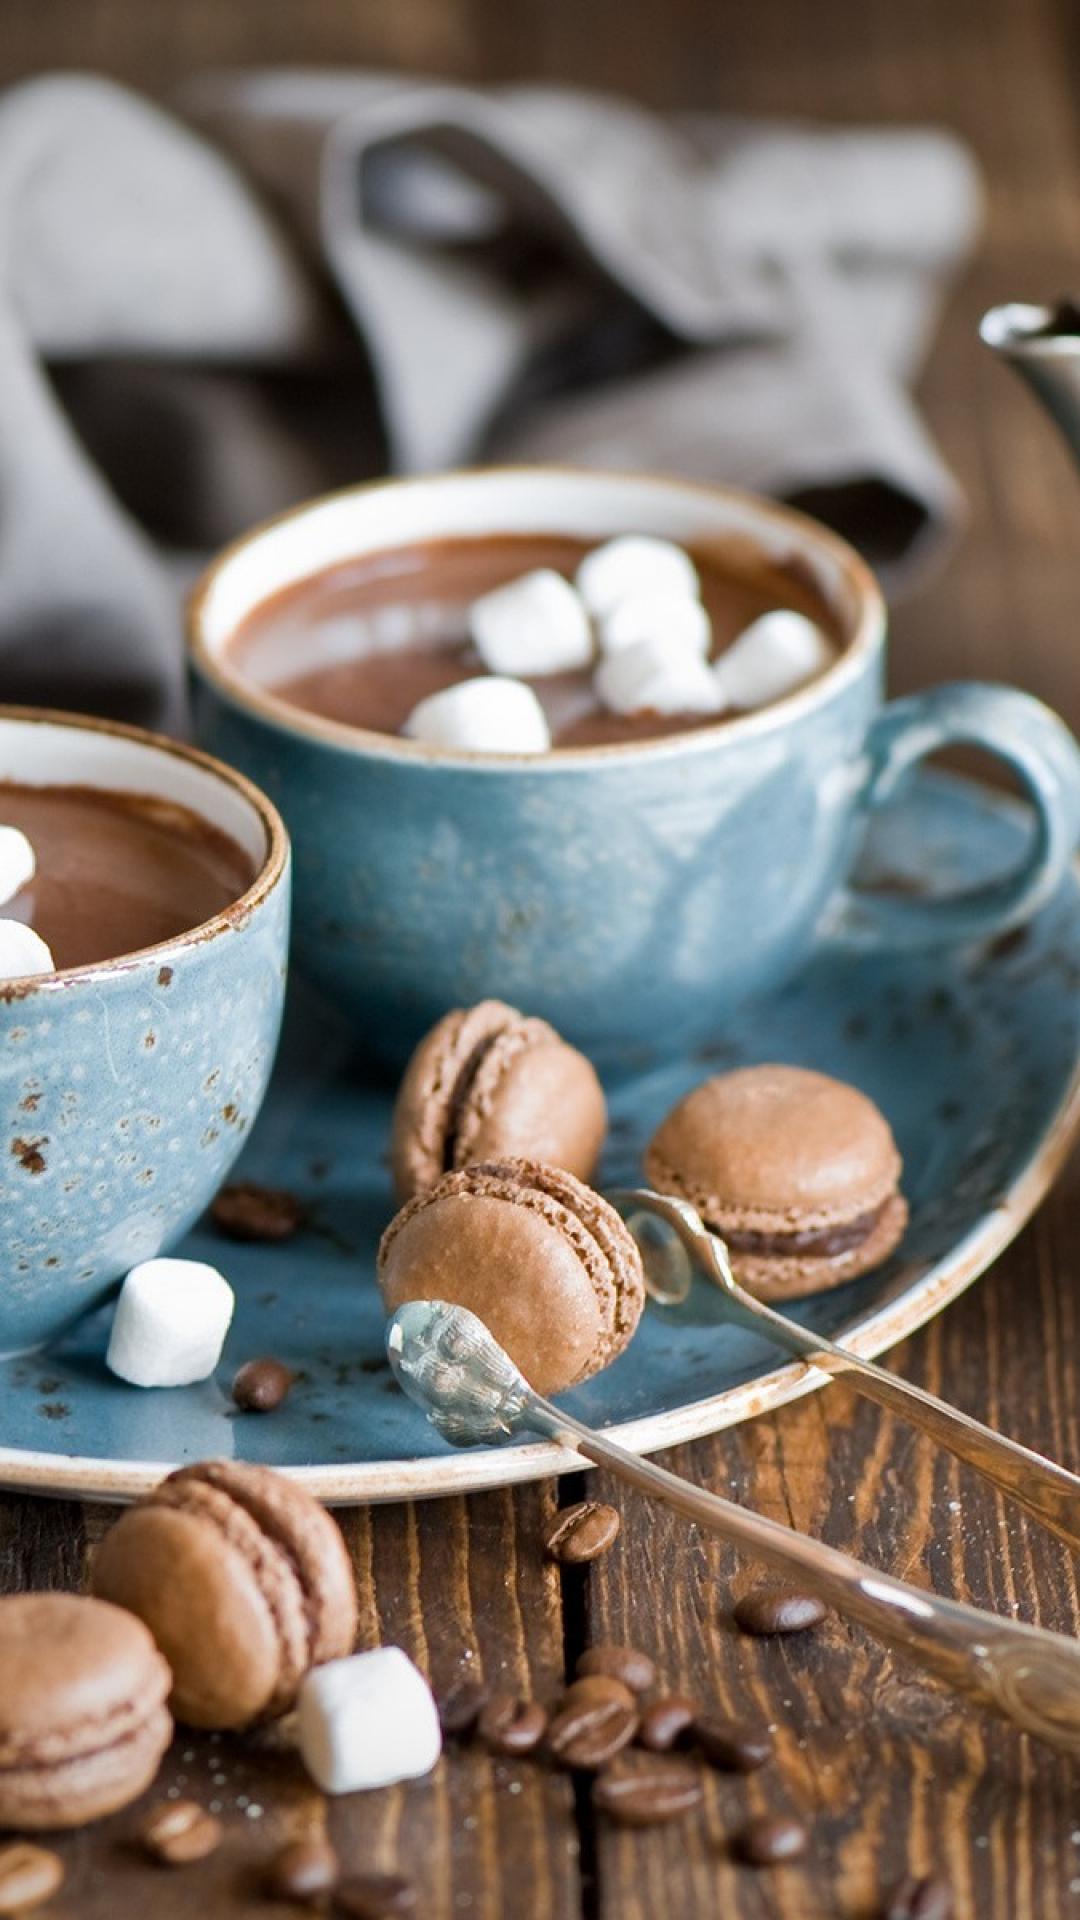 تصویر دلچسب از فنجان قهوه و شیرینی ماکارون شکلاتی